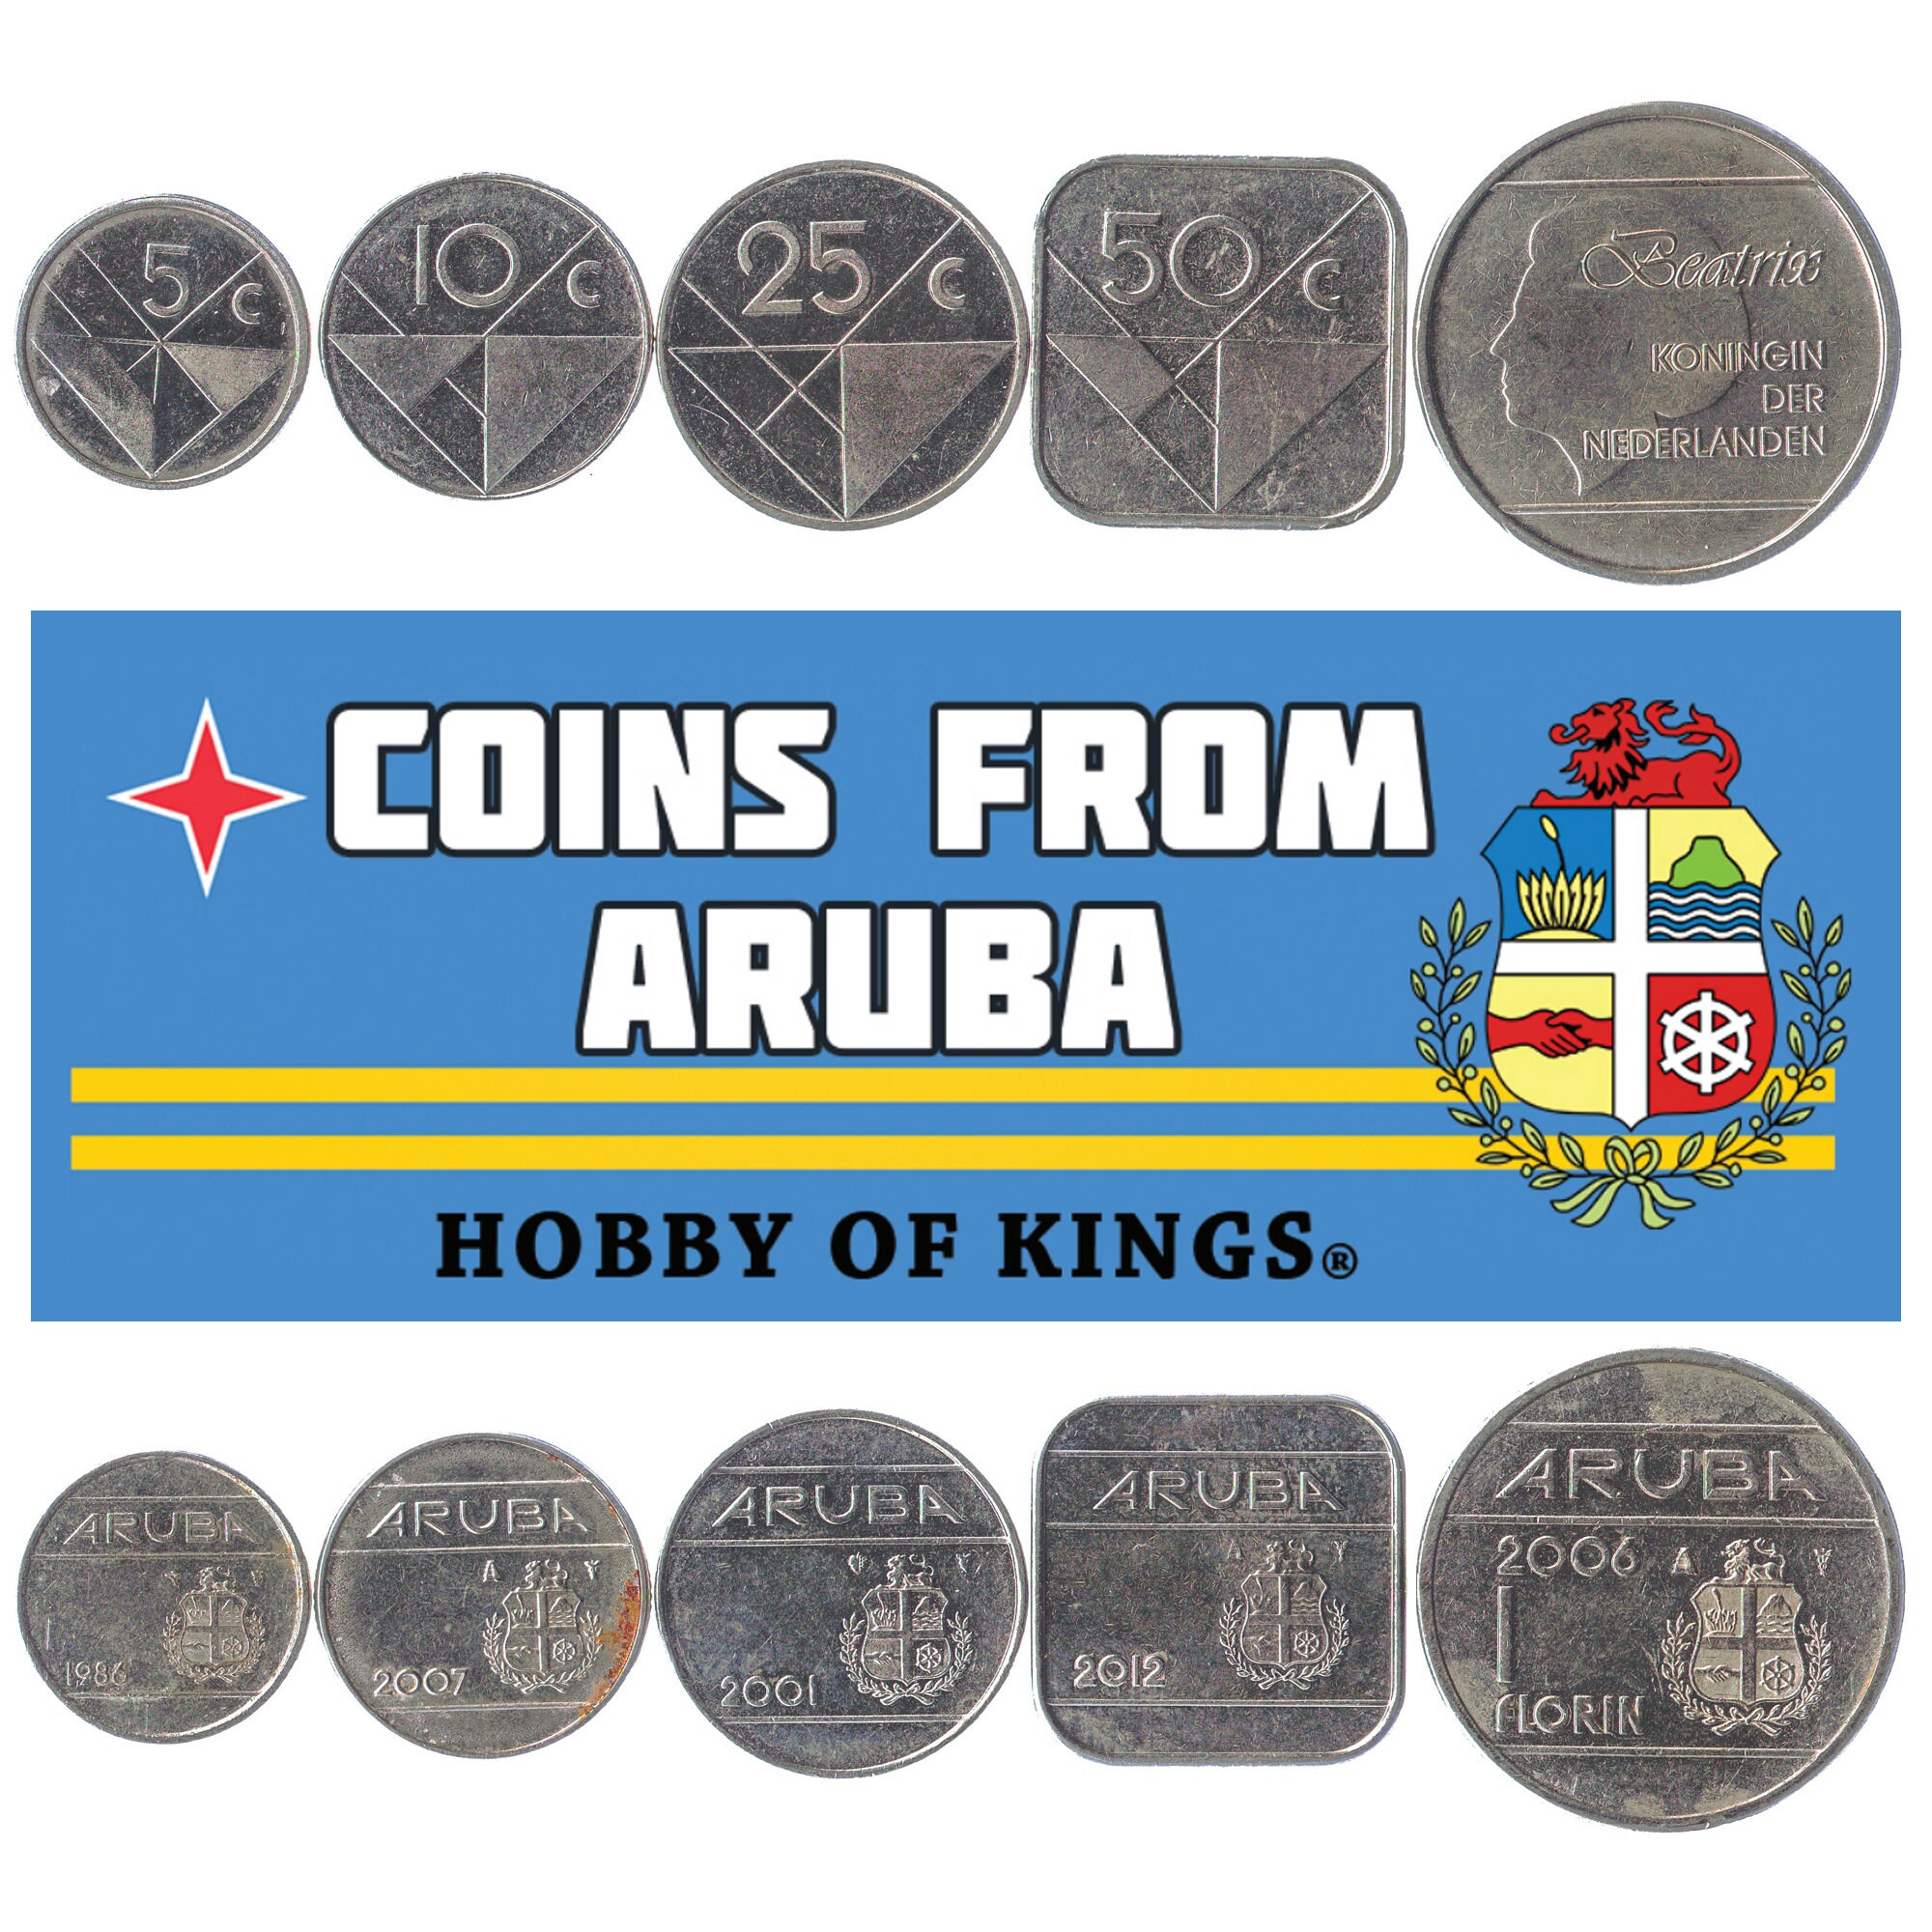 1997 1 Florin Aruba Coin Circulated 